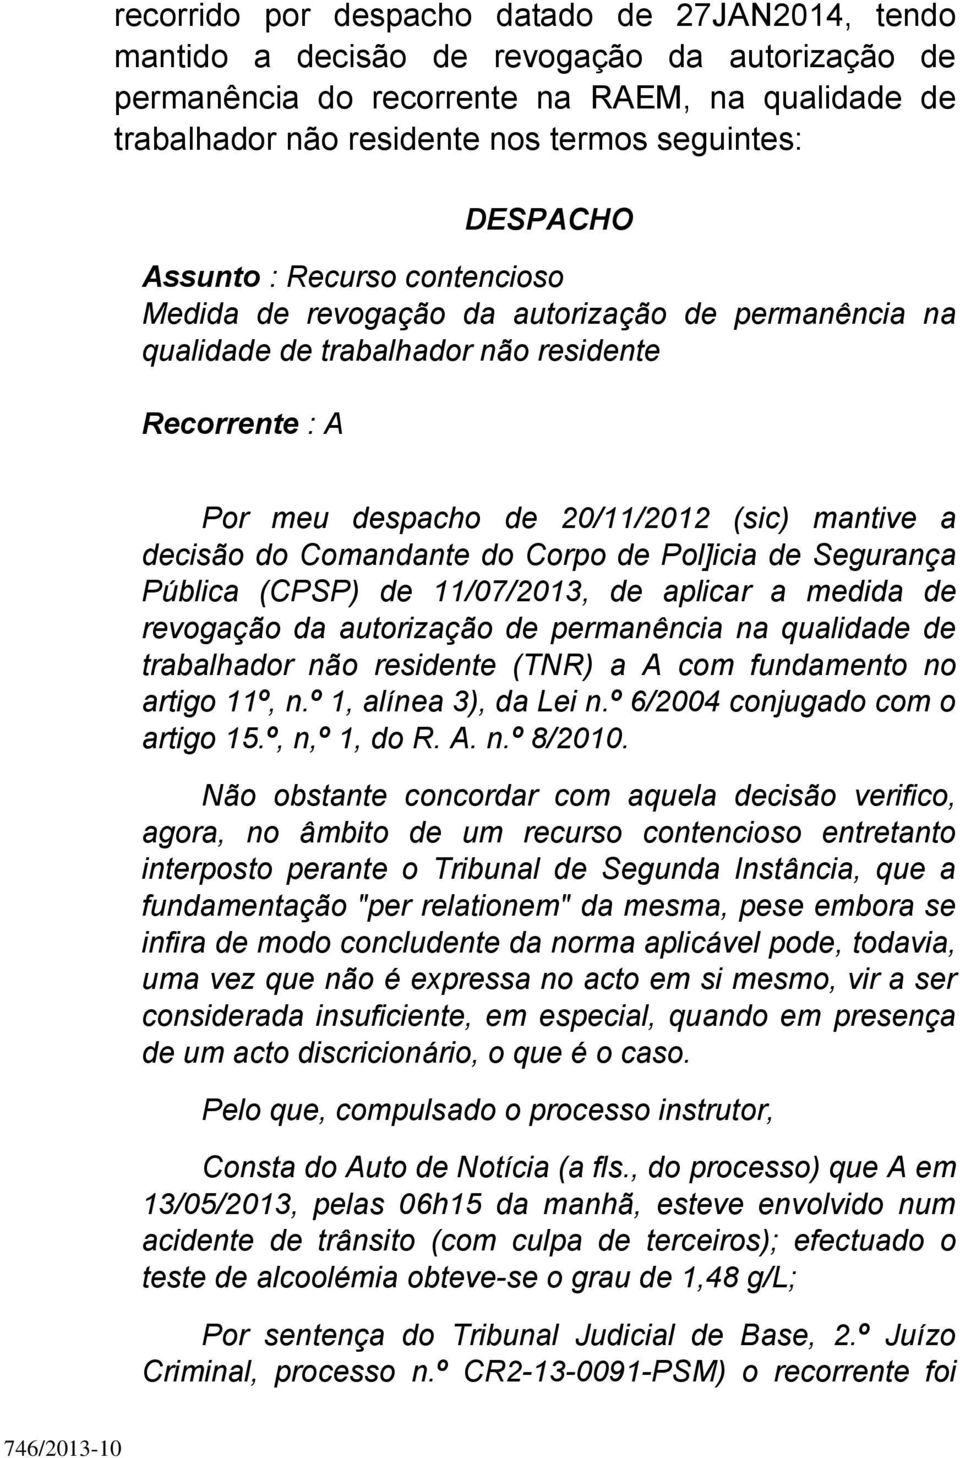 decisão do Comandante do Corpo de Pol]icia de Segurança Pública (CPSP) de 11/07/2013, de aplicar a medida de revogação da autorização de permanência na qualidade de trabalhador não residente (TNR) a